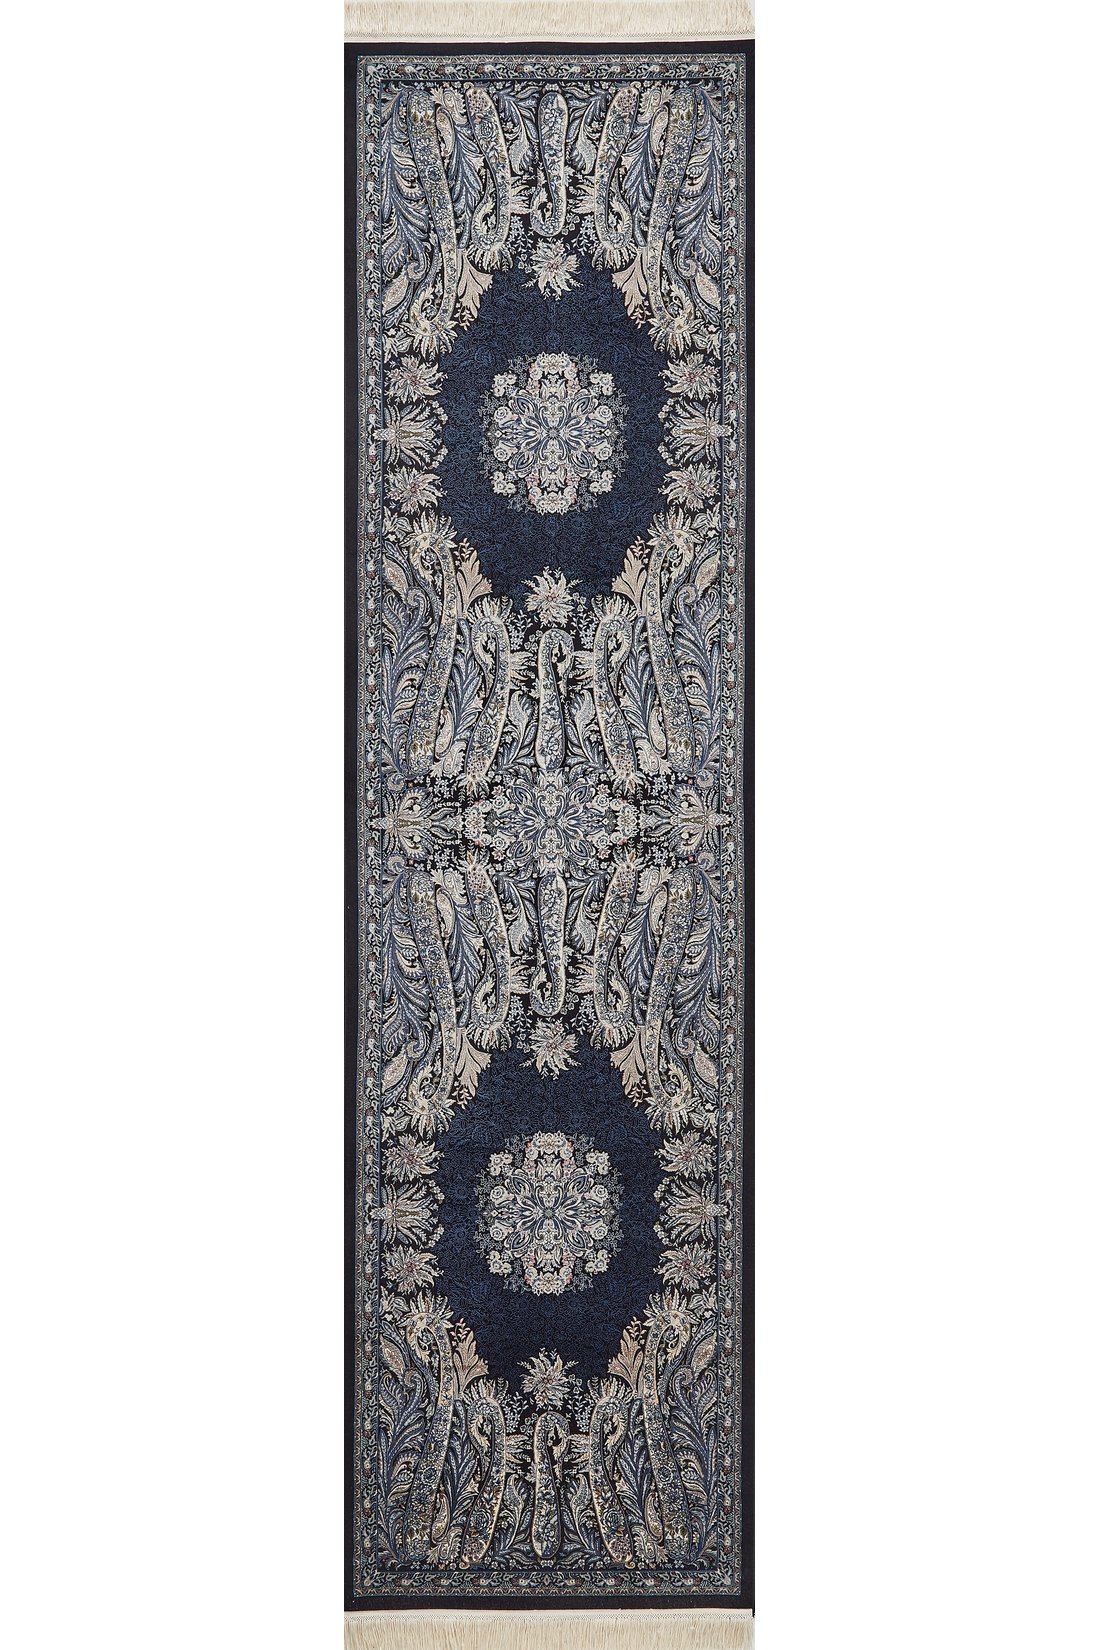 Old World Floral Türkischer Teppich – Marineblau – 2219B 